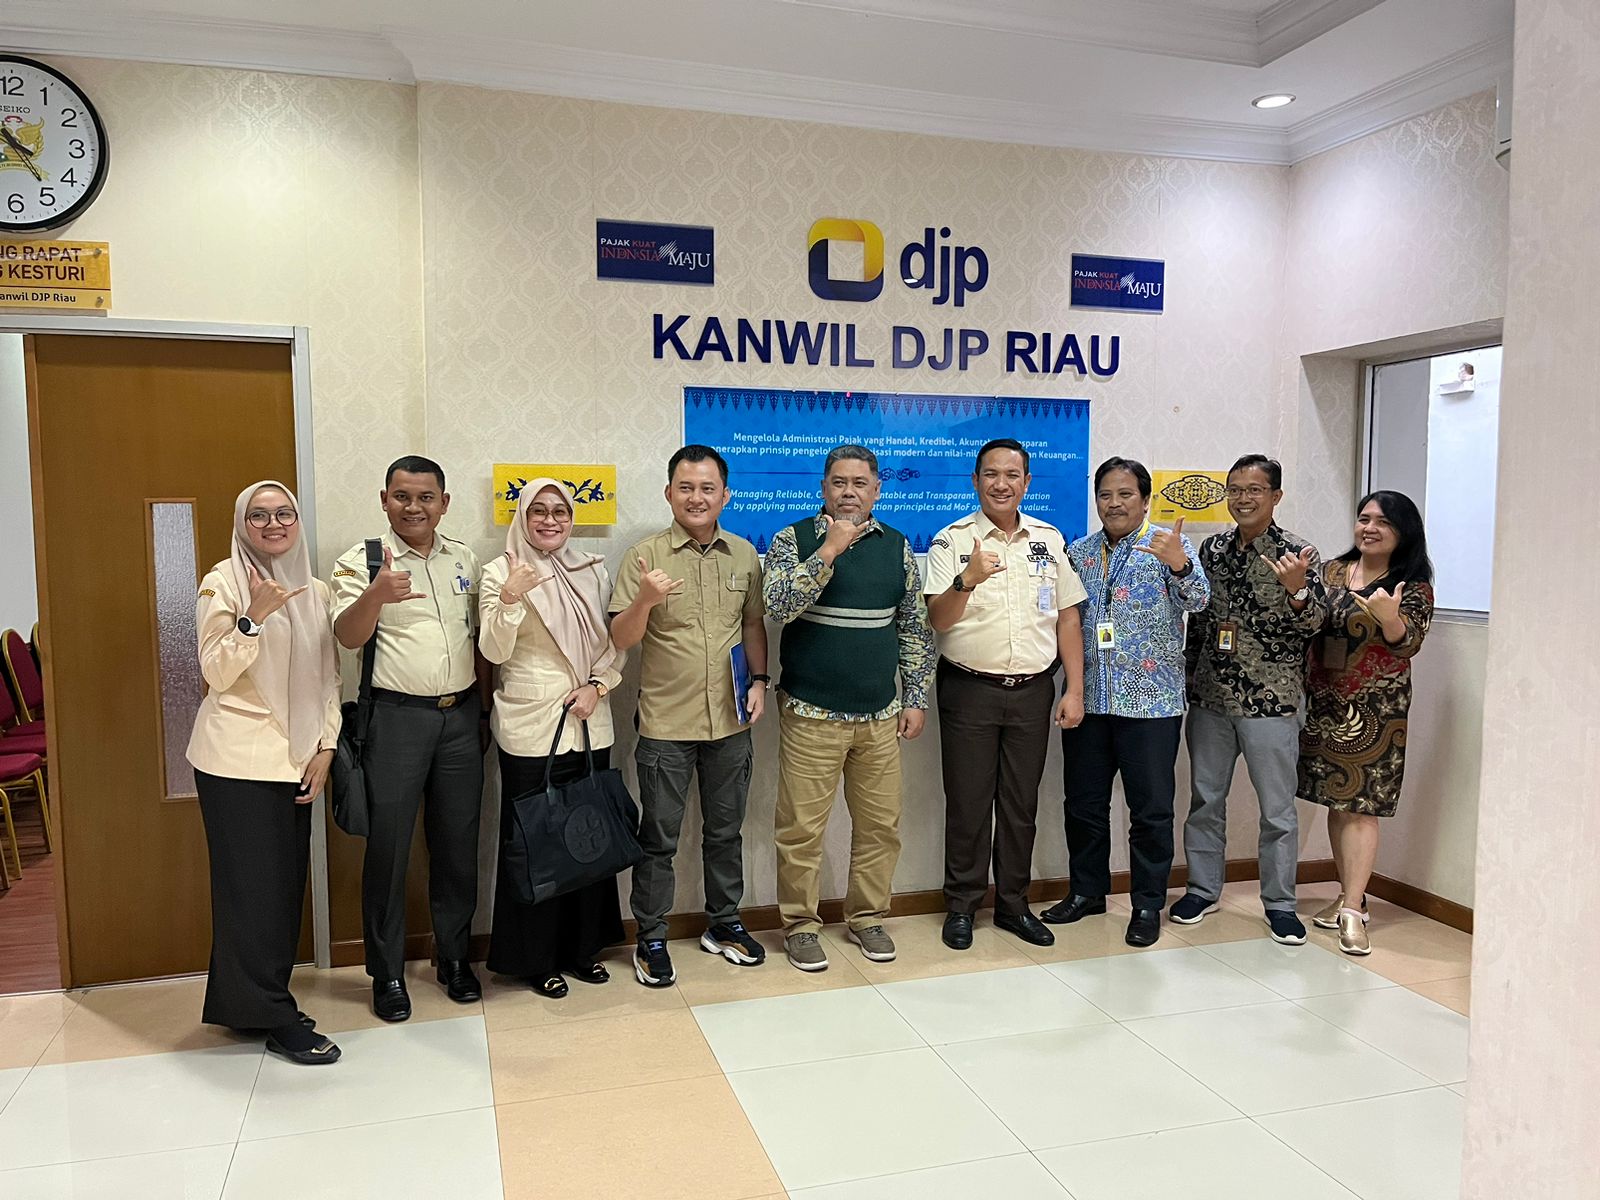 Bapenda dan DJP Kanwil Riau Bahas Sinergitas Penguatan Pajak Pusat dan Daerah